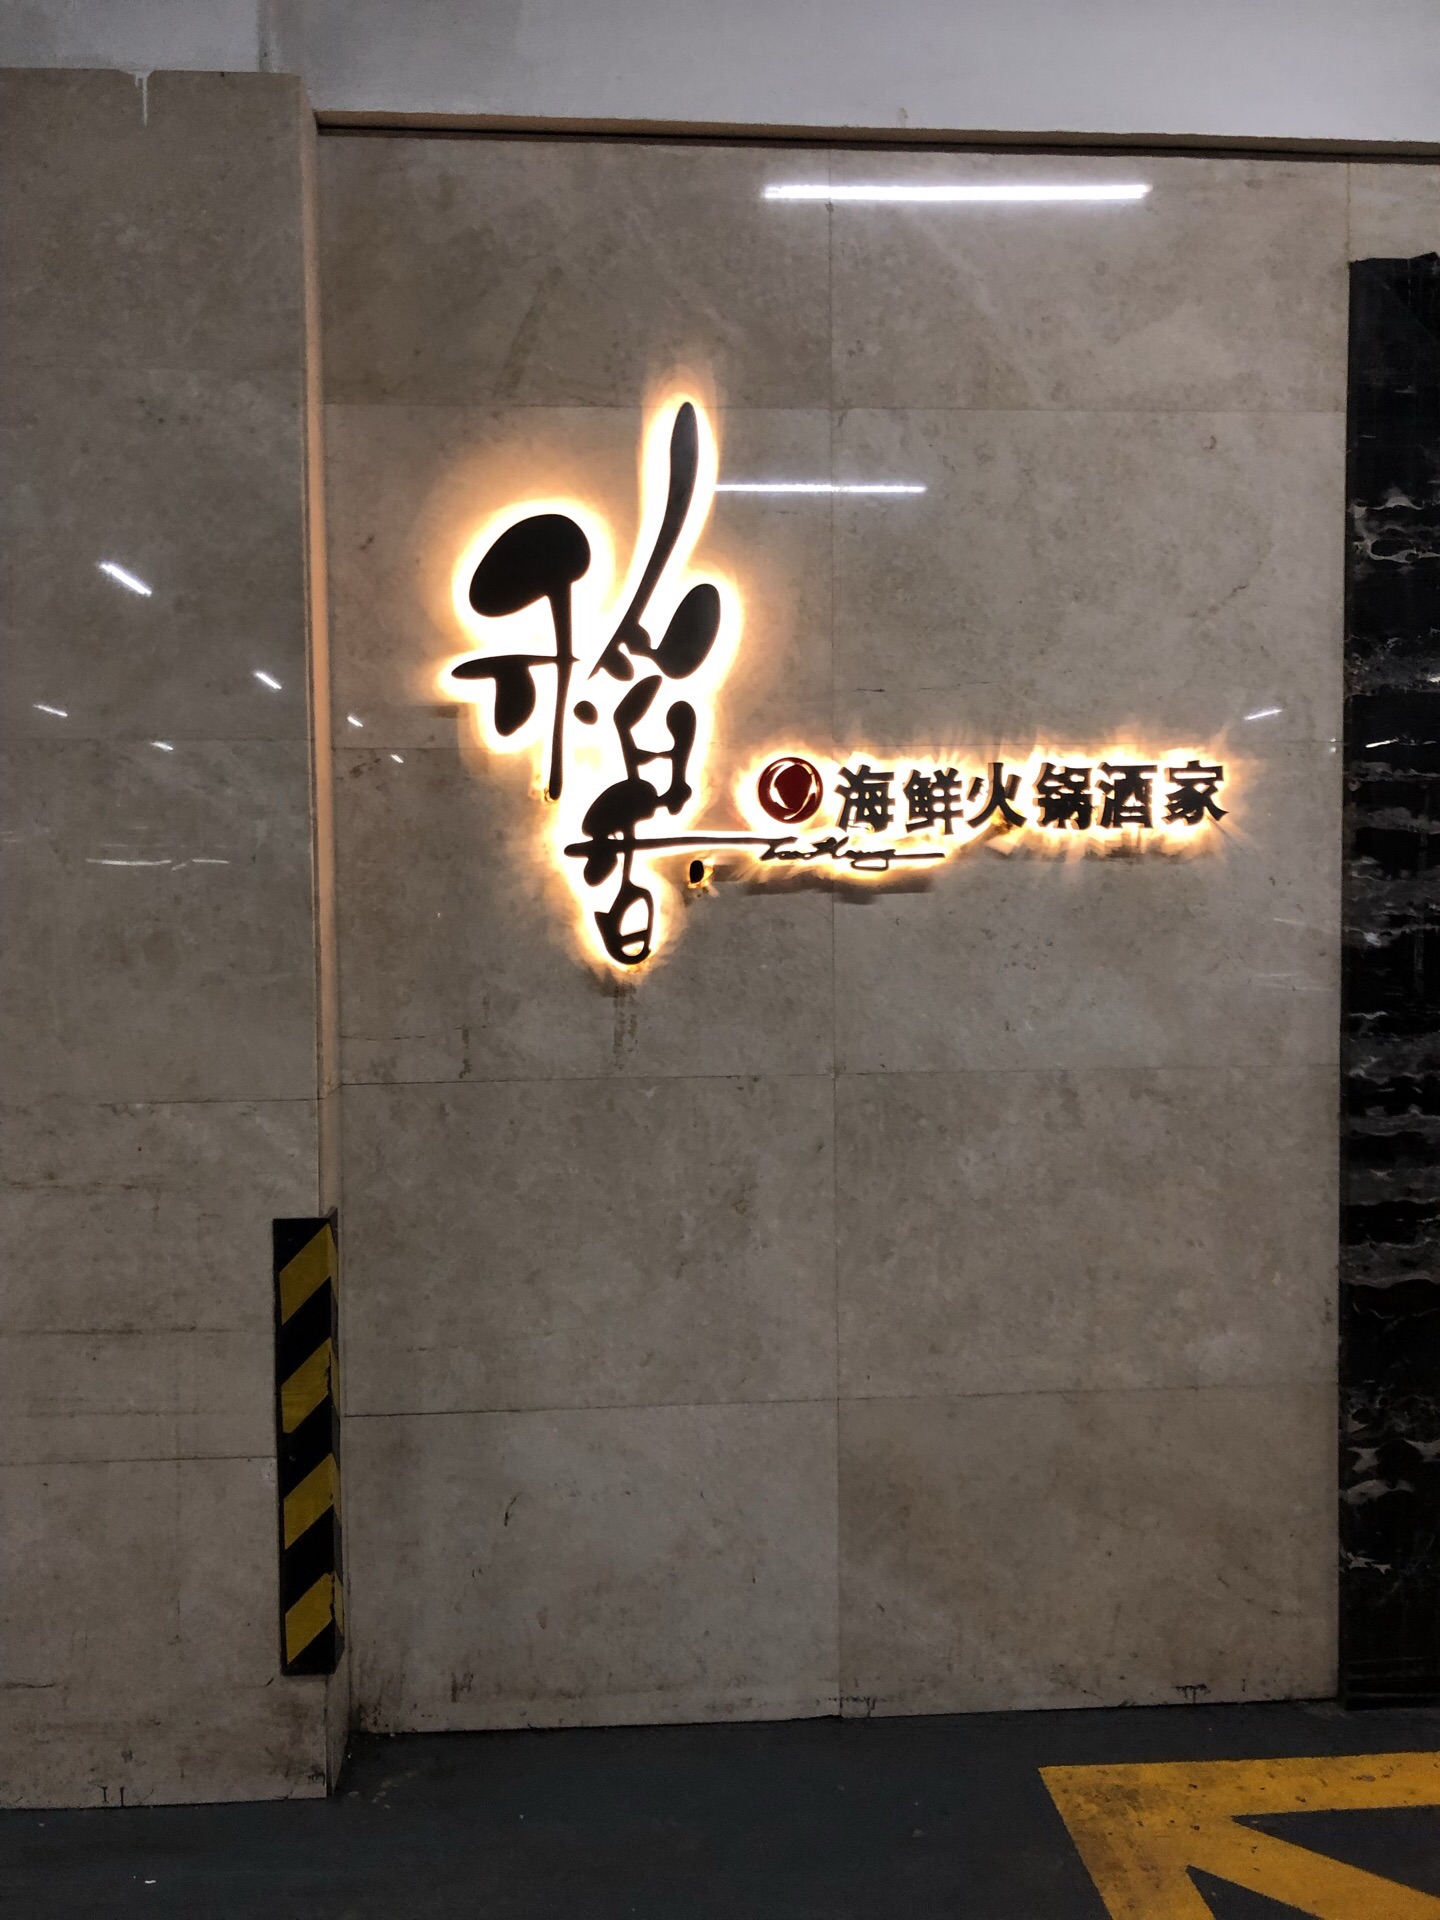 快乐柠檬官宣内蒙古赤峰摩尔城店3月14日正式开业-FoodTalks全球食品资讯